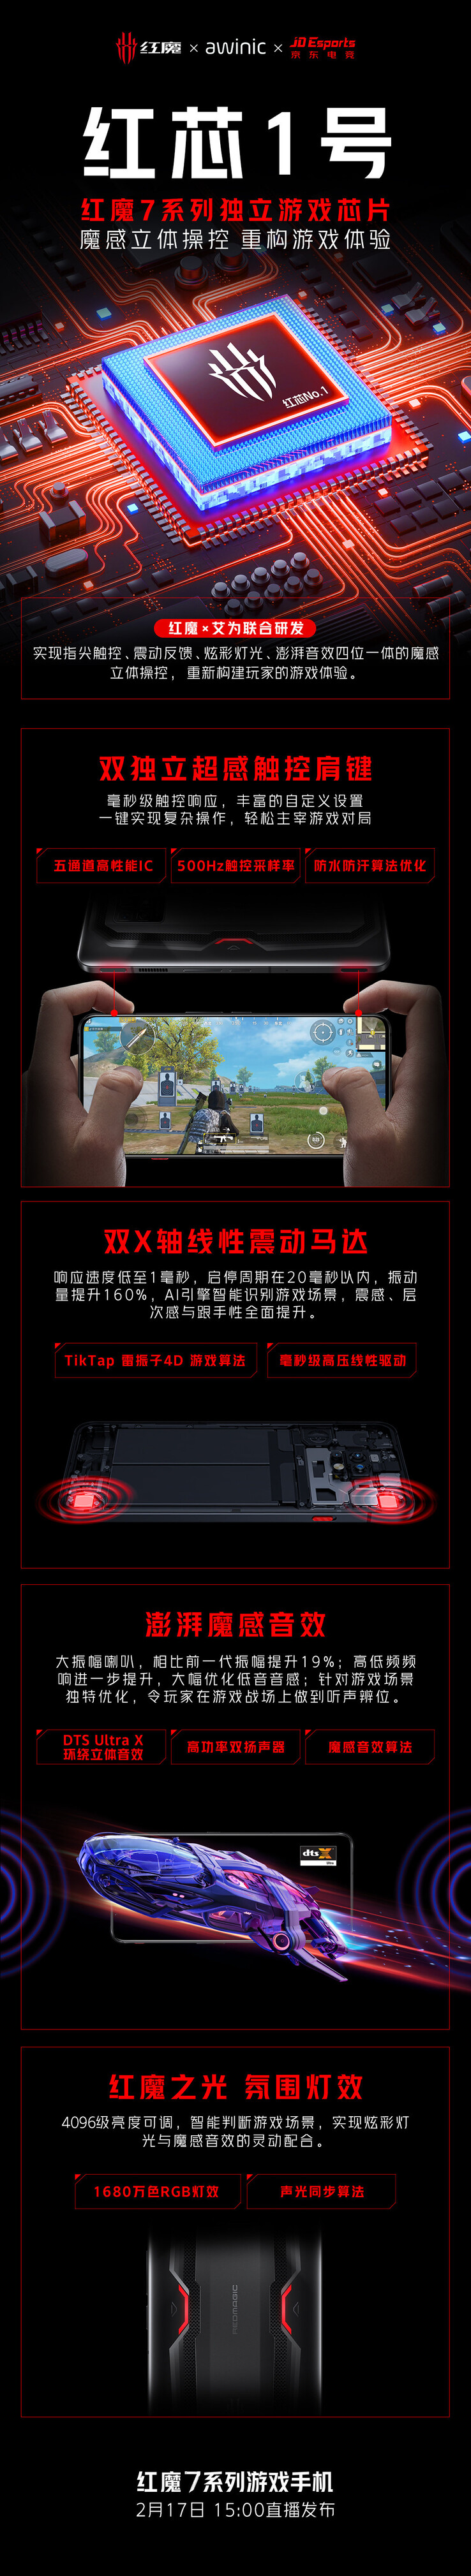 La Red Core 1 est censée faire partie de la série RedMagic 7 lors de son lancement. (Source : RedMagic via Weibo)